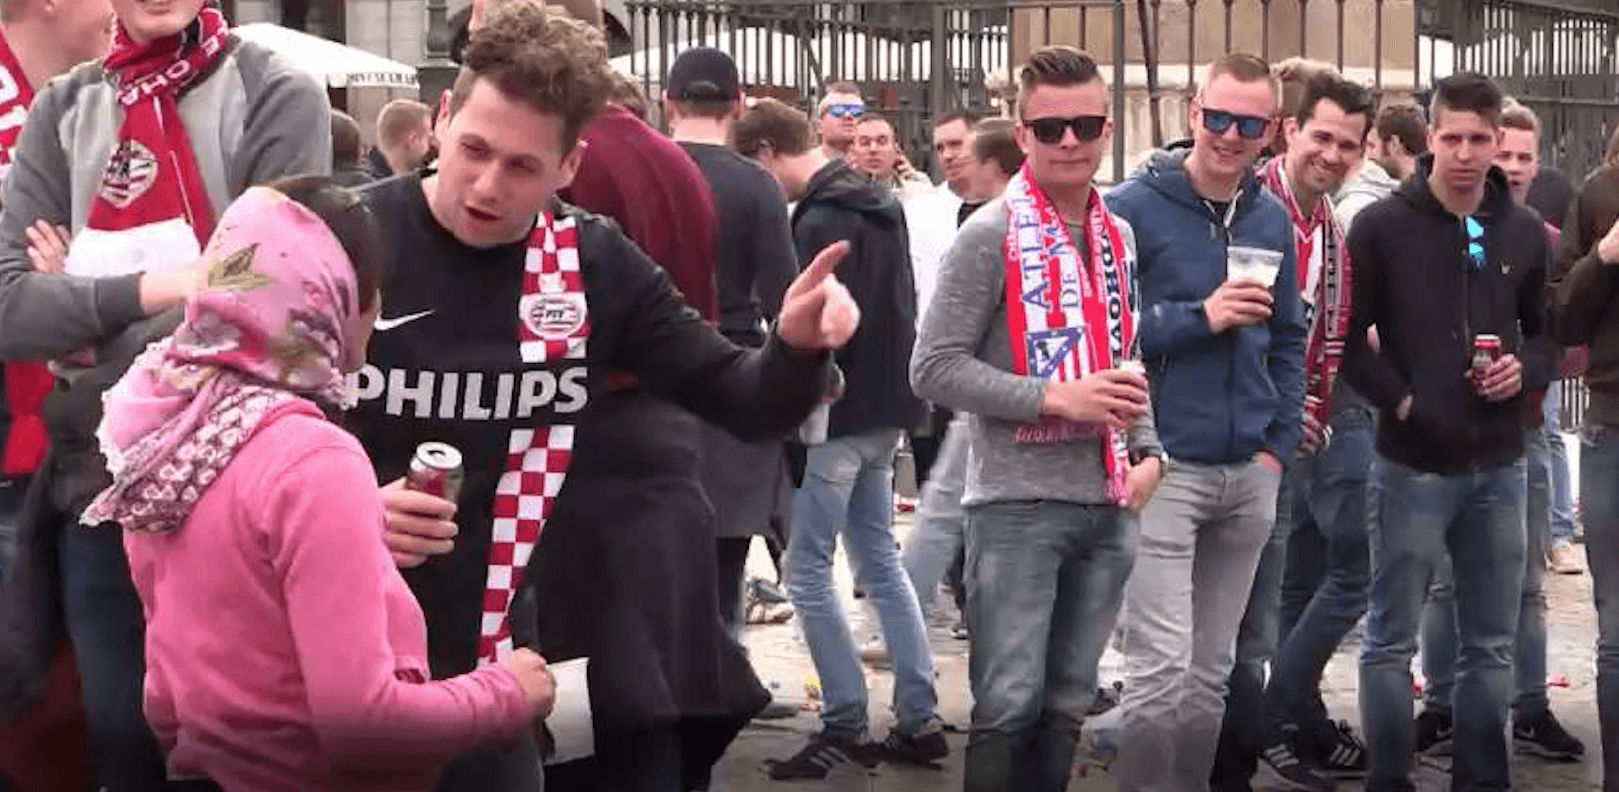 Le cas des fans néerlandais quand la masse augmente le mal / Psychologie